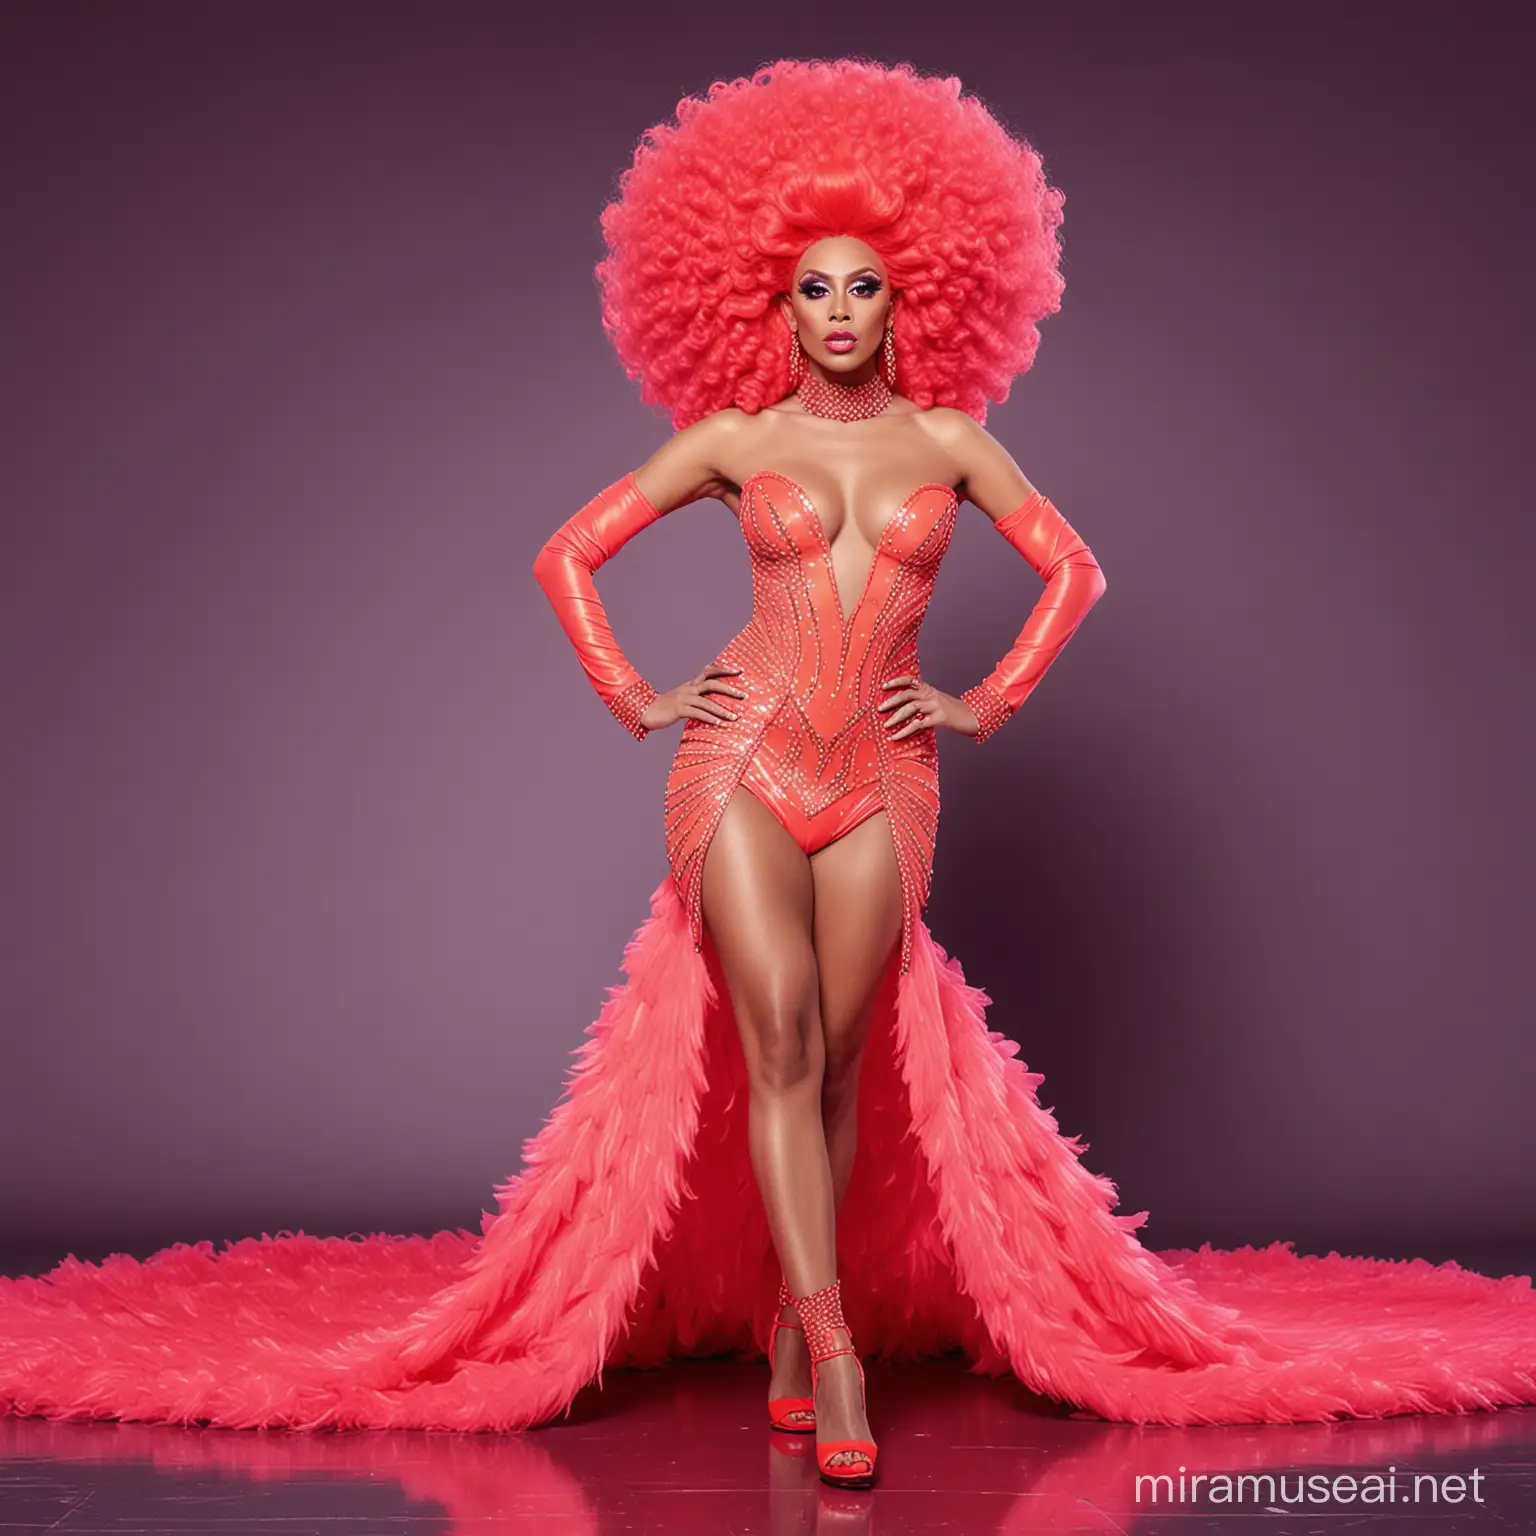 Brazilian Neon Drag Queen Struts Red Carpet Couture on RuPauls Drag Race Runway